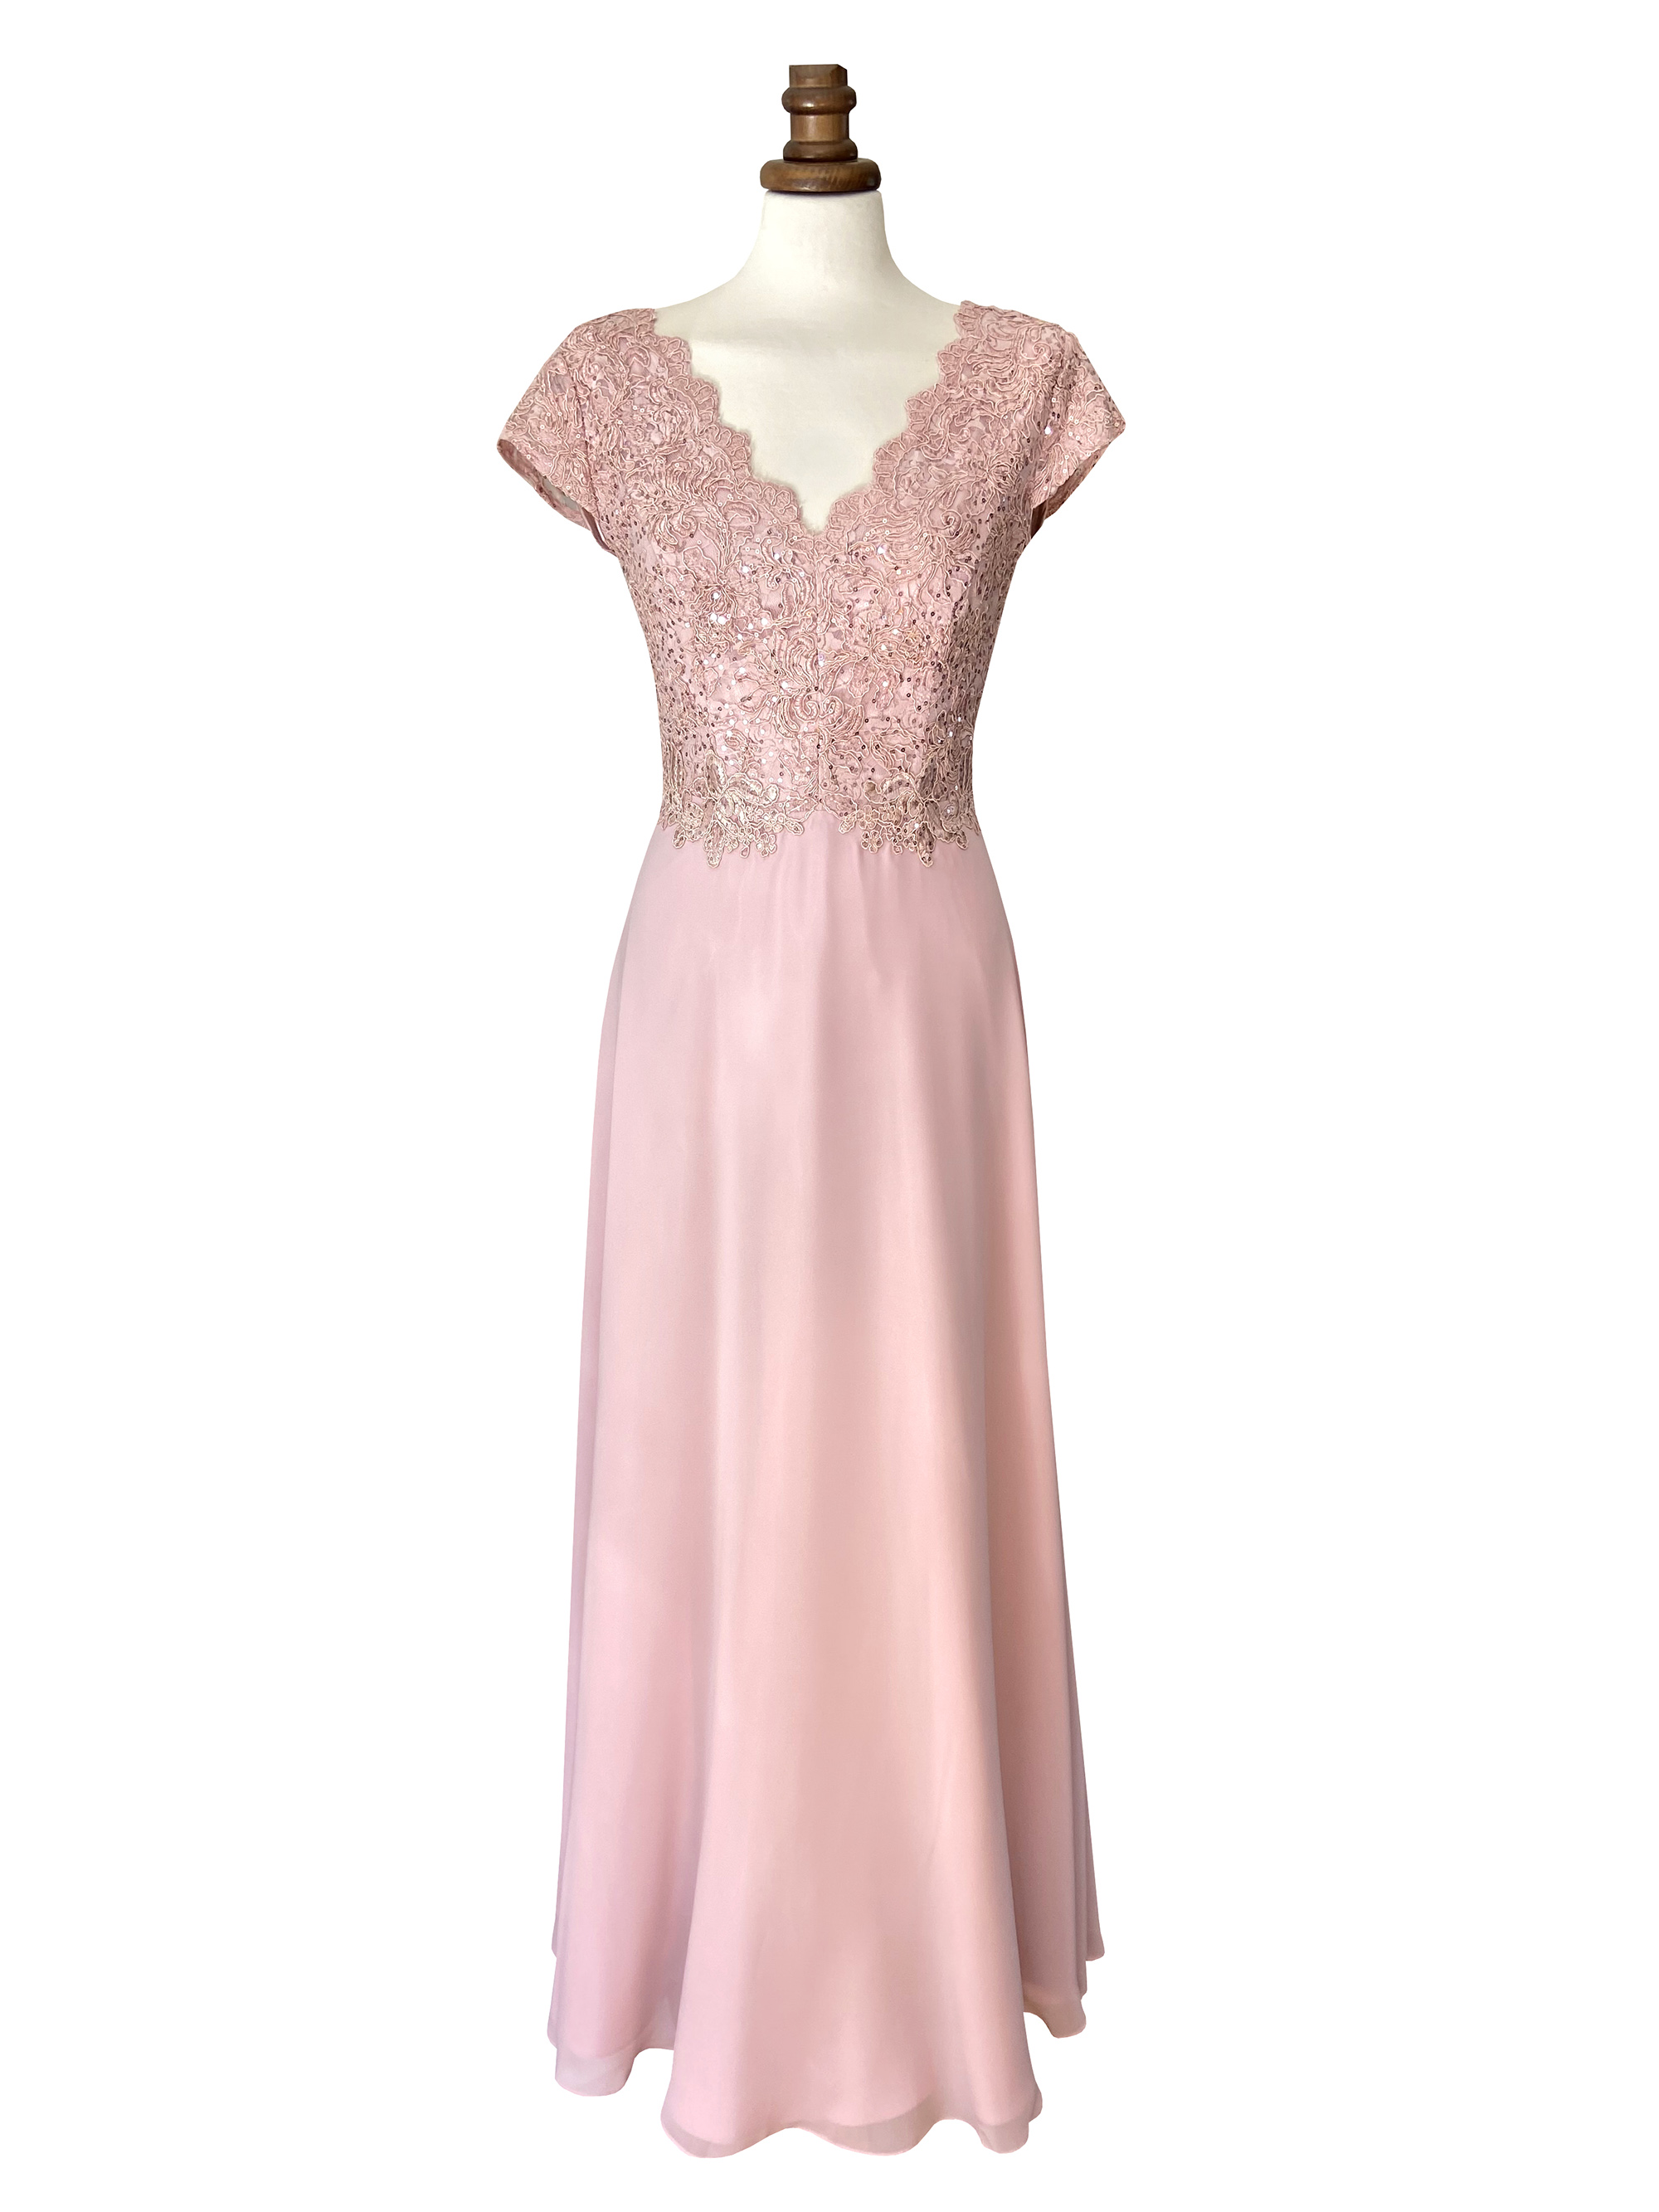 Roze jurk met mouwtje maat 36-40